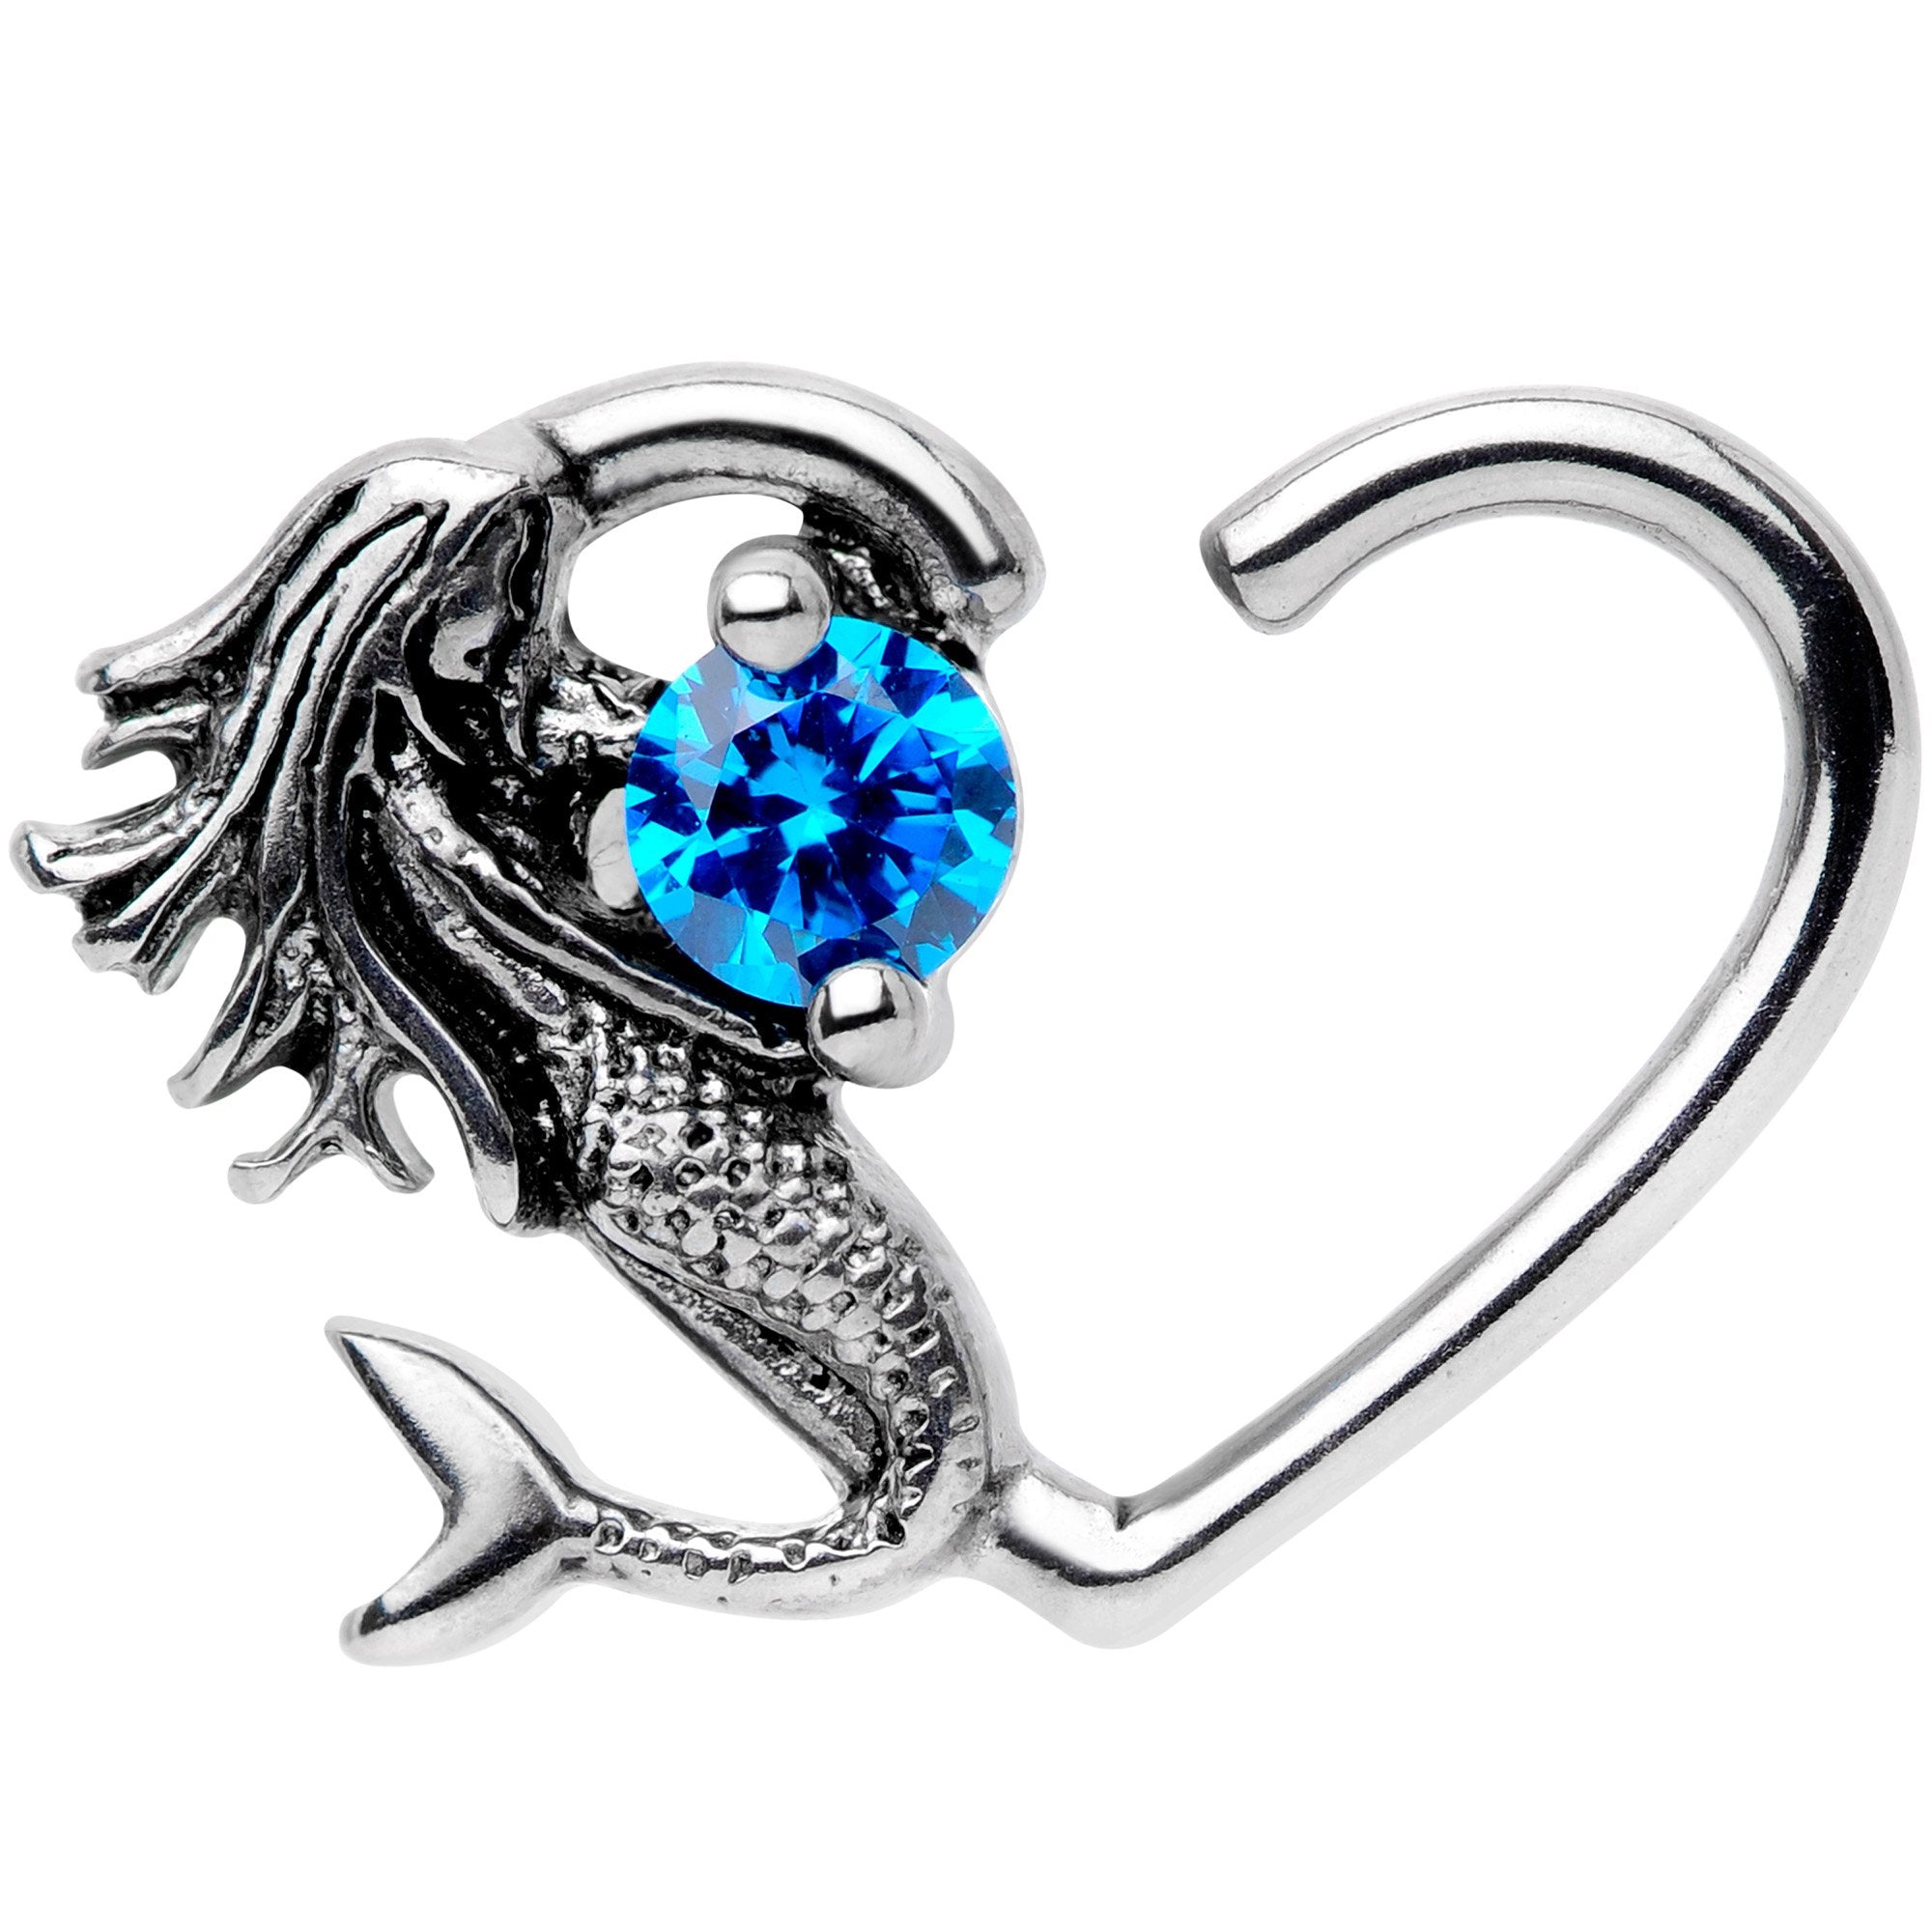 16 Gauge 3/8 Blue CZ Gem Mermaid Treasure Right Heart Closure Ring